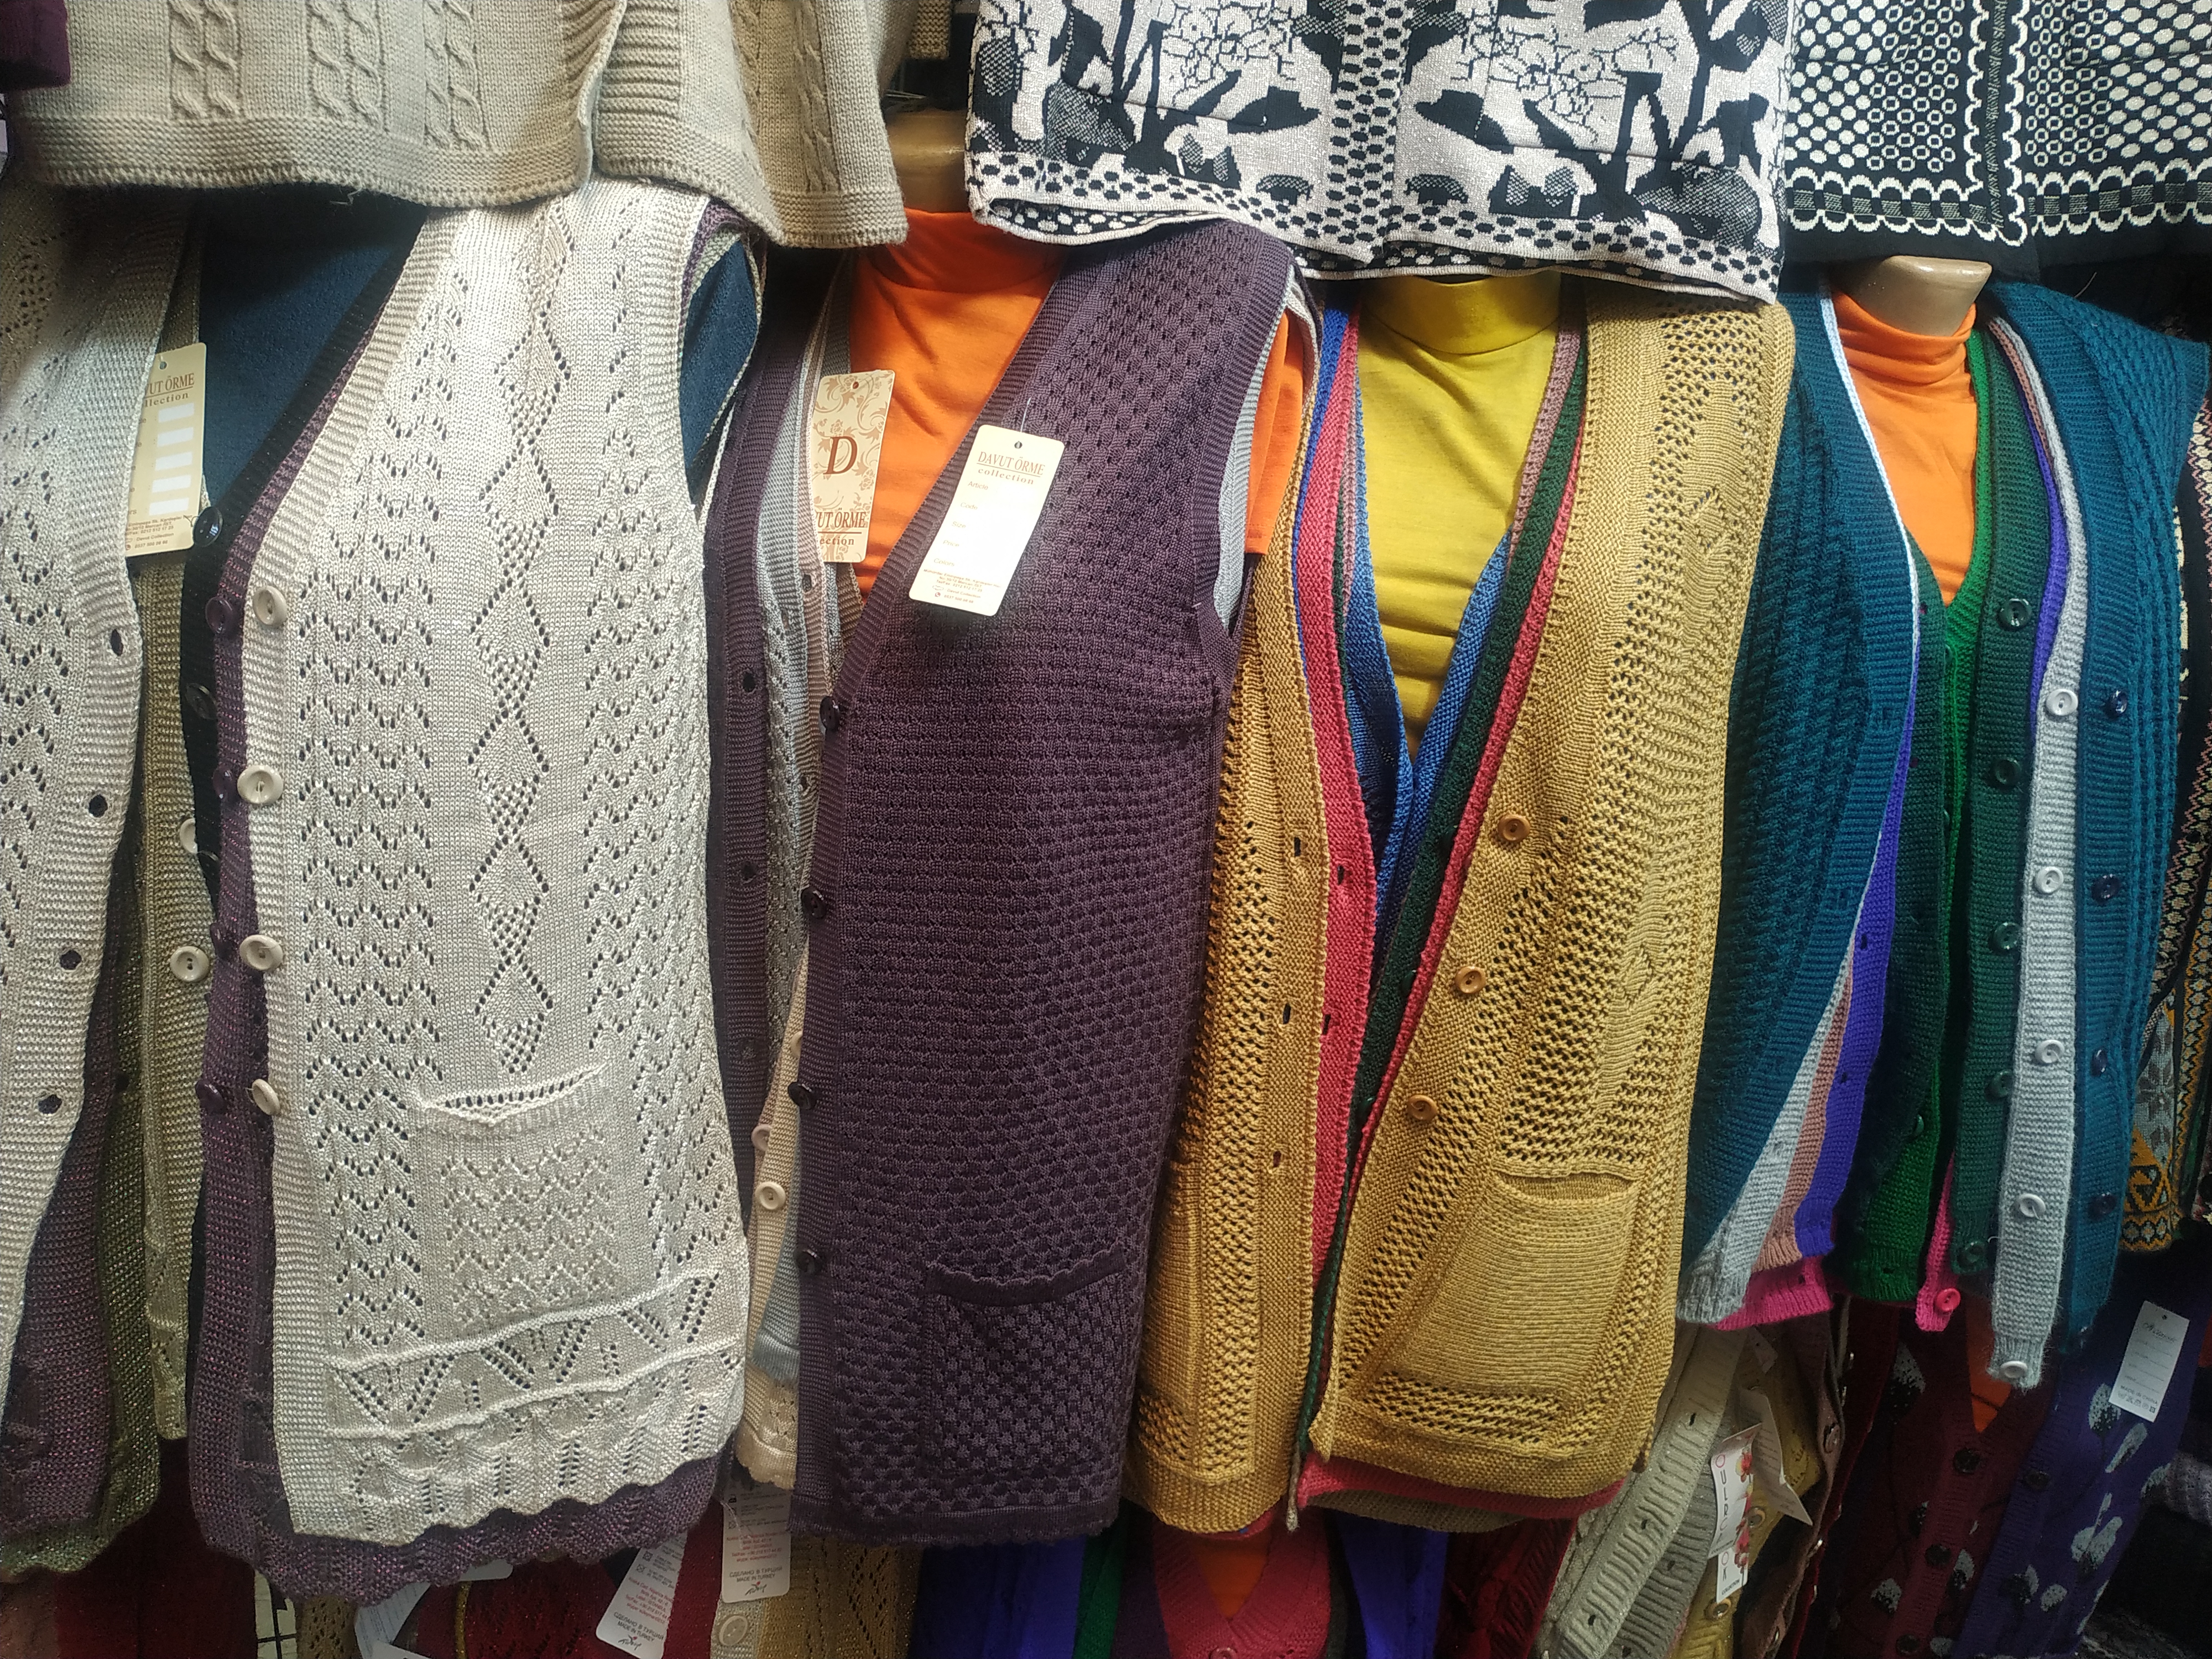 <p>Закупаем оптом женские джемпера, жилеты, кардиганы, кофты, свитера для возраста выше 40 лет. Объем закупа от 100 штук и больше.</p>